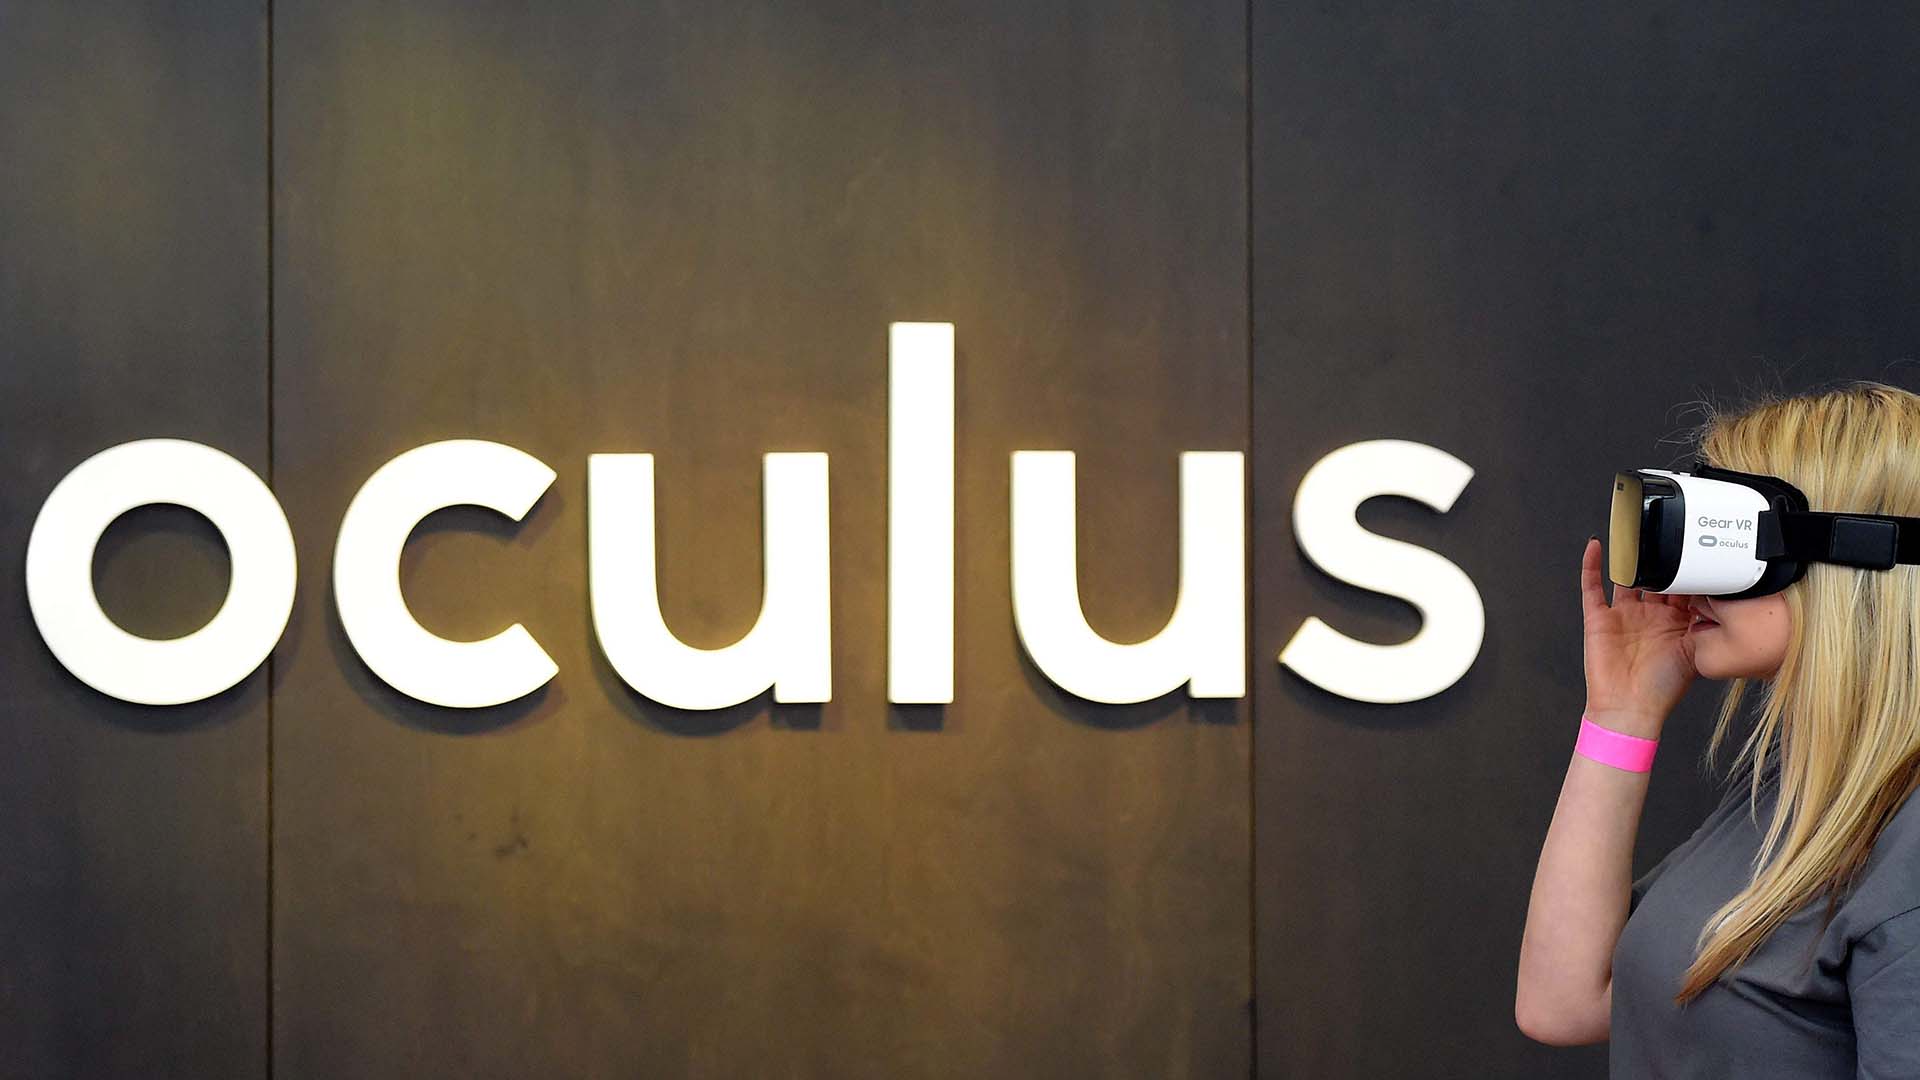 Em 2014 o Facebook adquiriu a Oculus por 2 bilhões de dólares para desenvolver comunicações em VR.